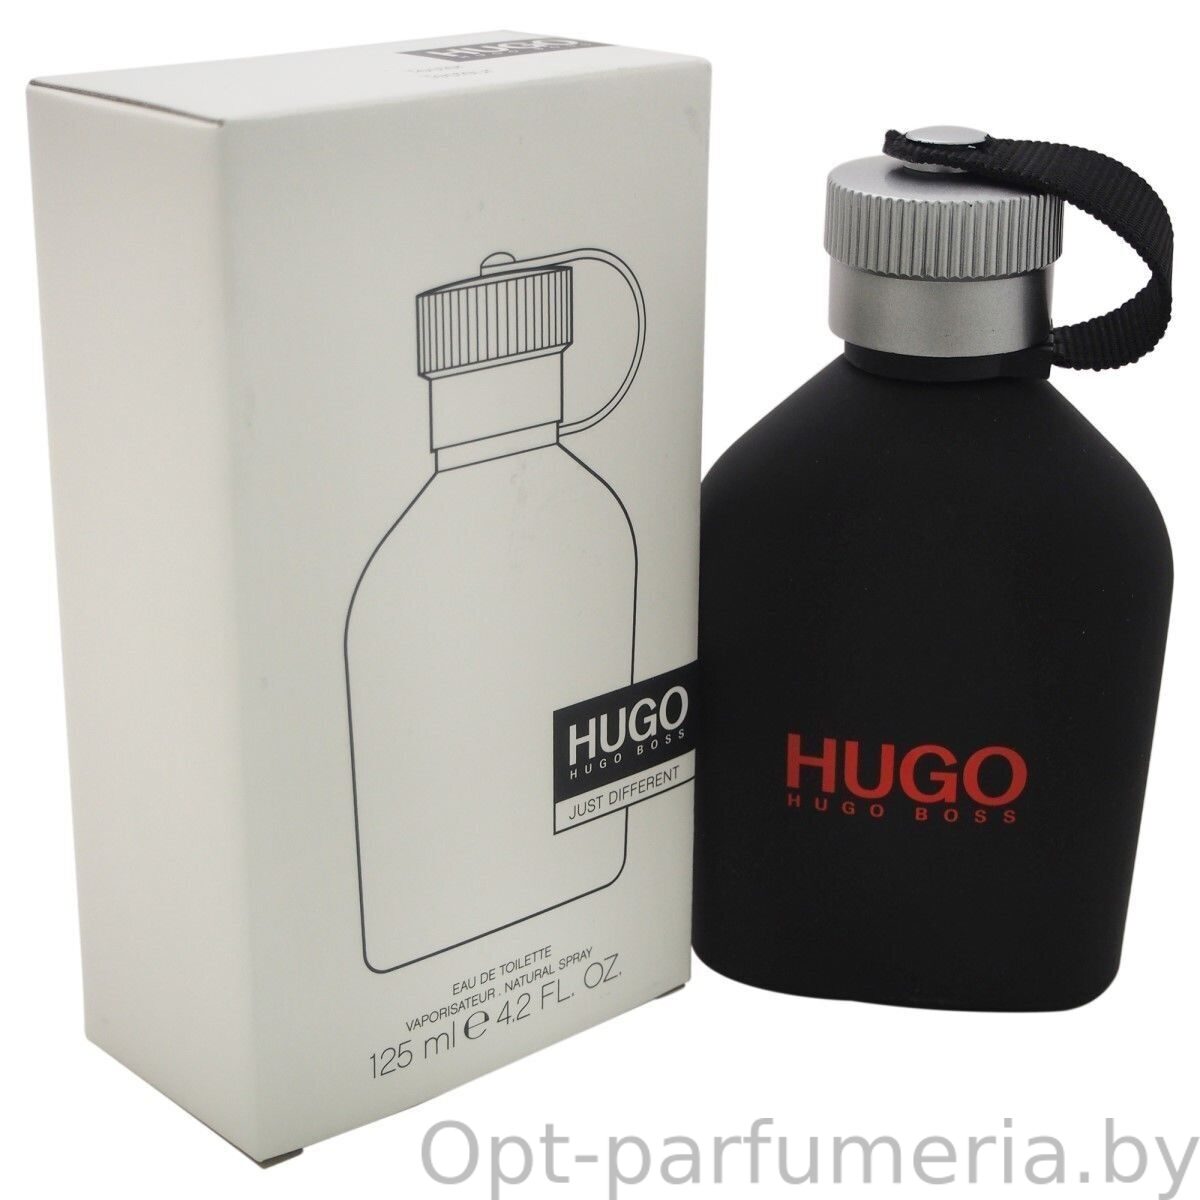 Hugo just different. Hugo Boss just different 125 мл. Hugo Boss men 125ml EDT. Hugo Boss Iced EDT men 125ml Tester. Hugo Boss Hugo man EDT 125ml.